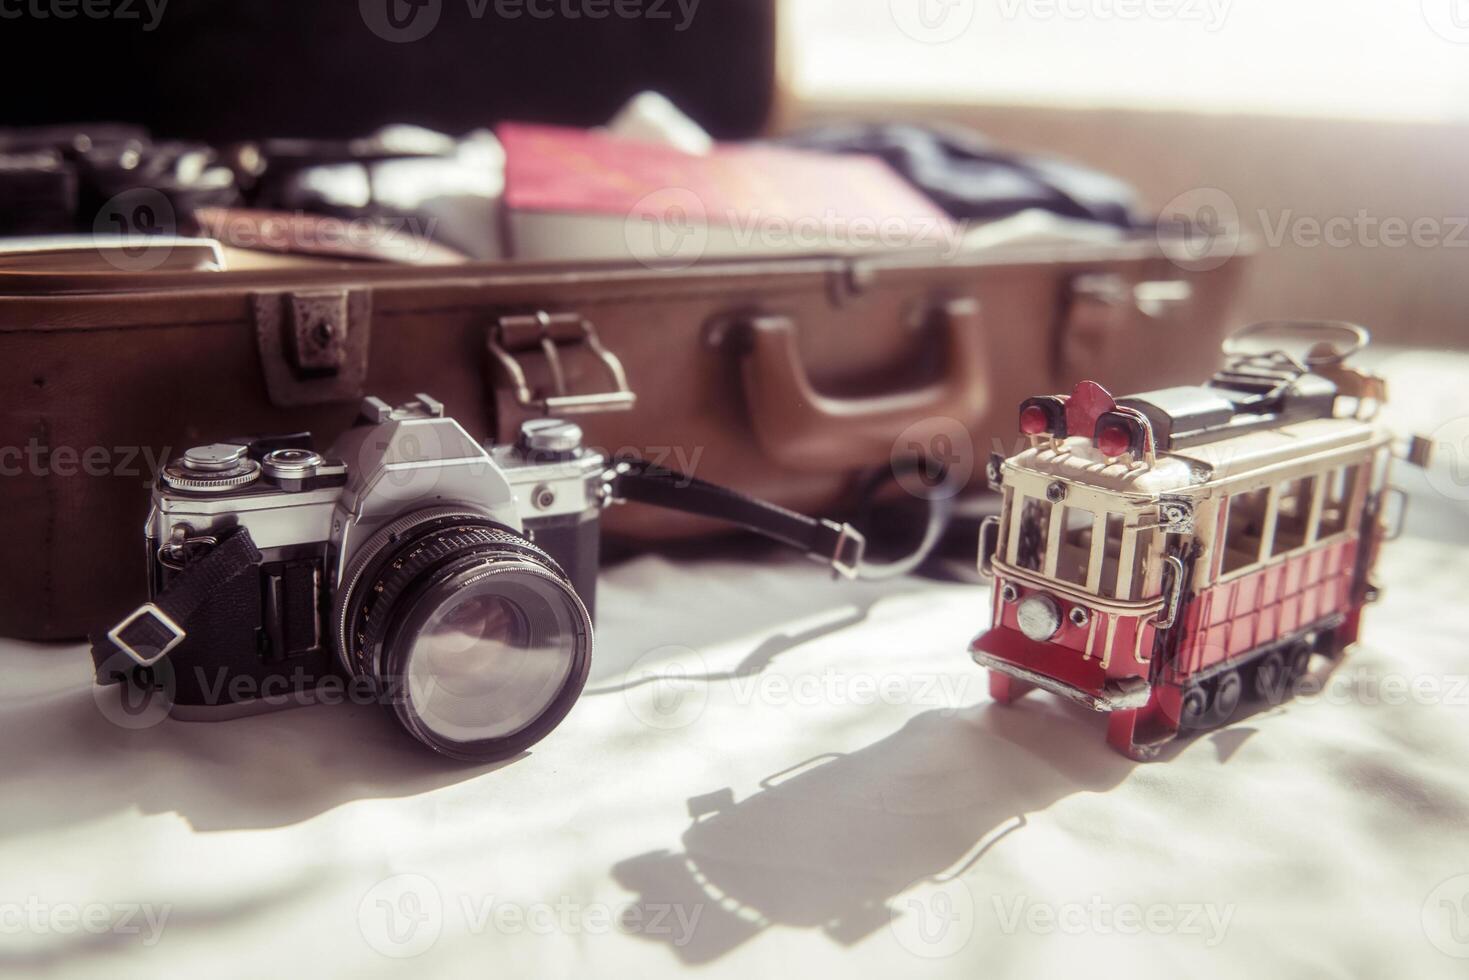 slr 35mm wijnoogst camera en reizen zak in bed kamer. voorbereidingen treffen voor op reis foto